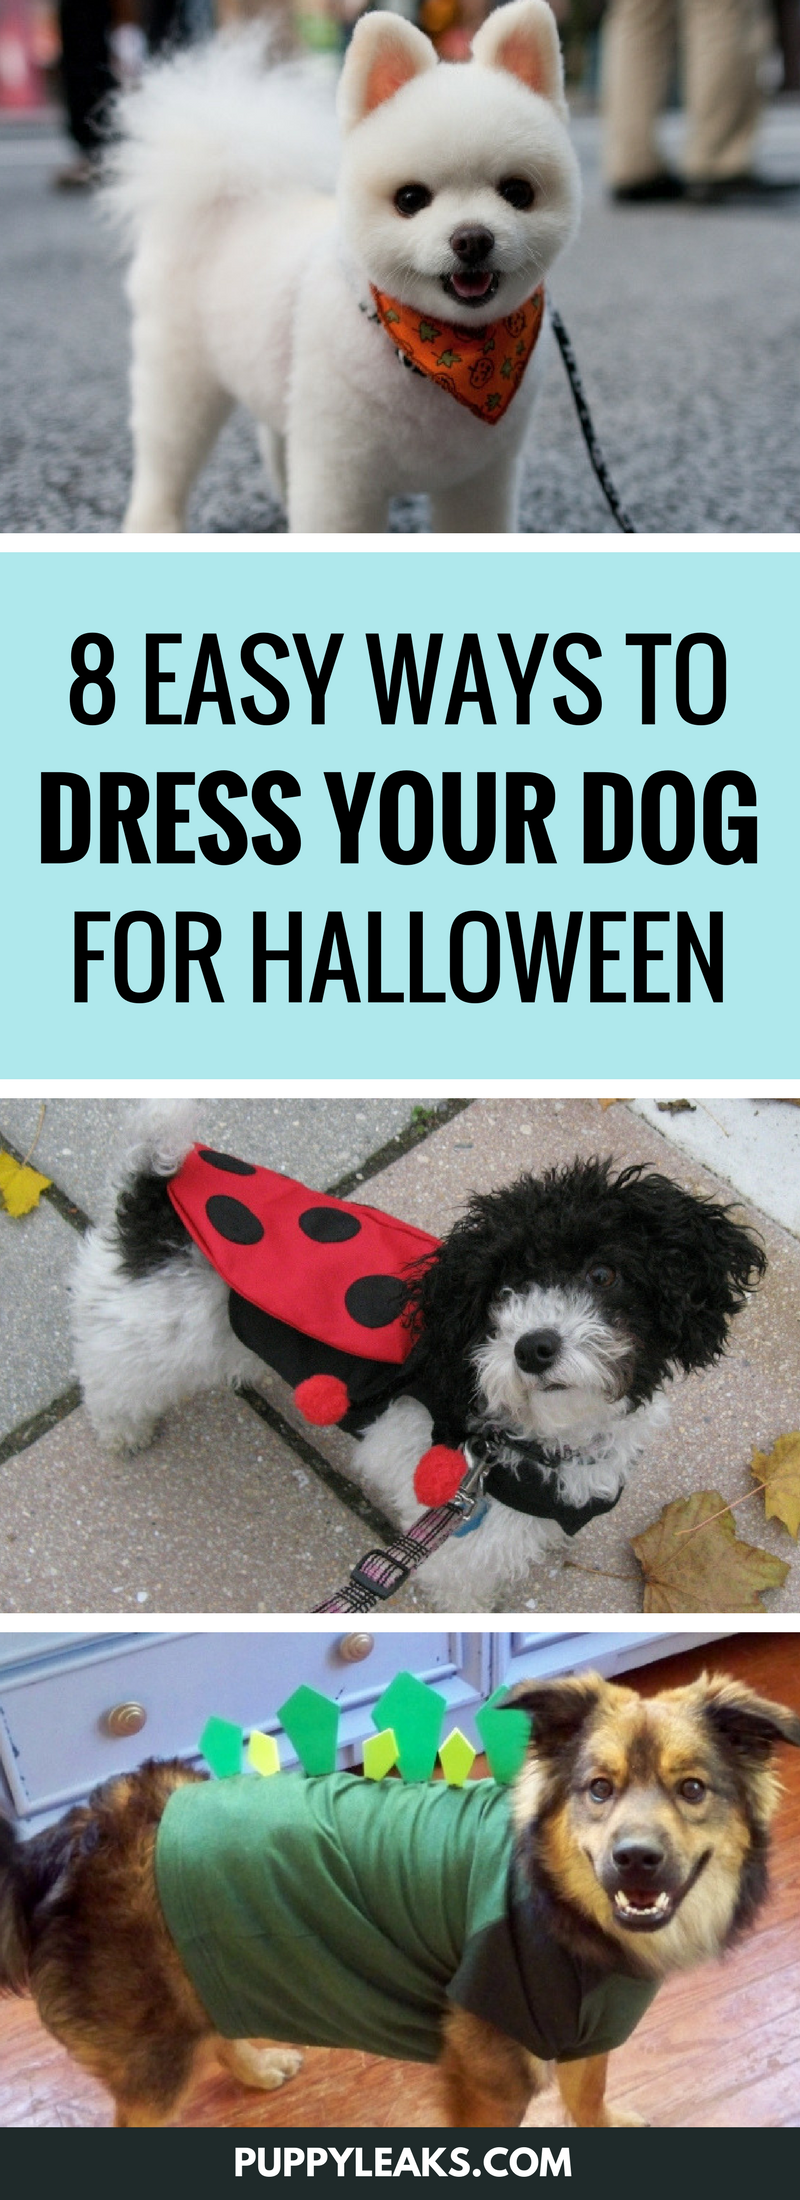 8 jednoduchých způsobů, jak obléknout svého psa na Halloween